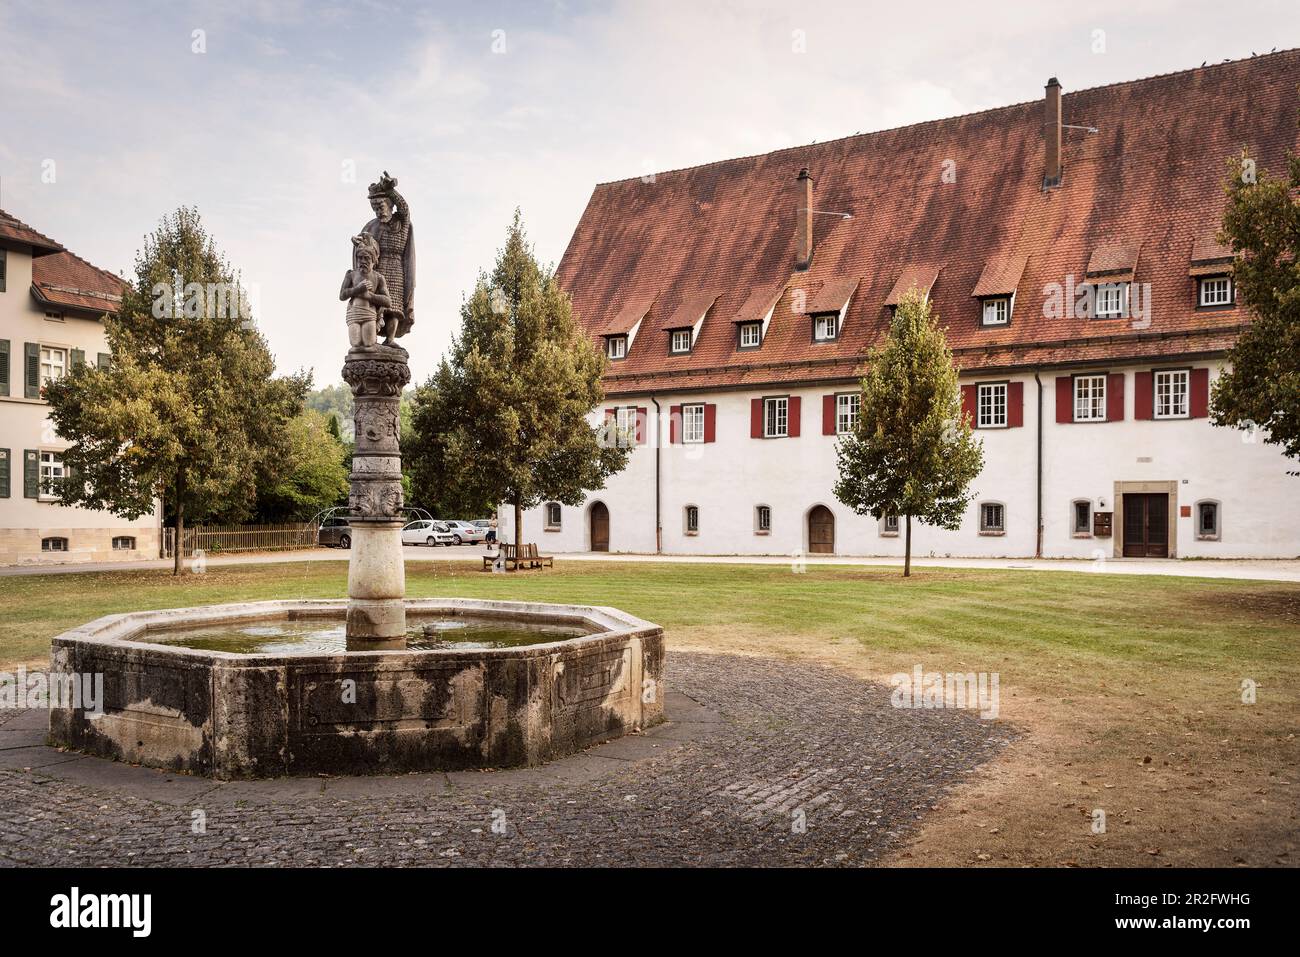 Fontaine dans la cour cloître, Blaubeuren, quartier Alb-Donau, Alb souabe, Bade-Wurtemberg, Allemagne, Europe Banque D'Images